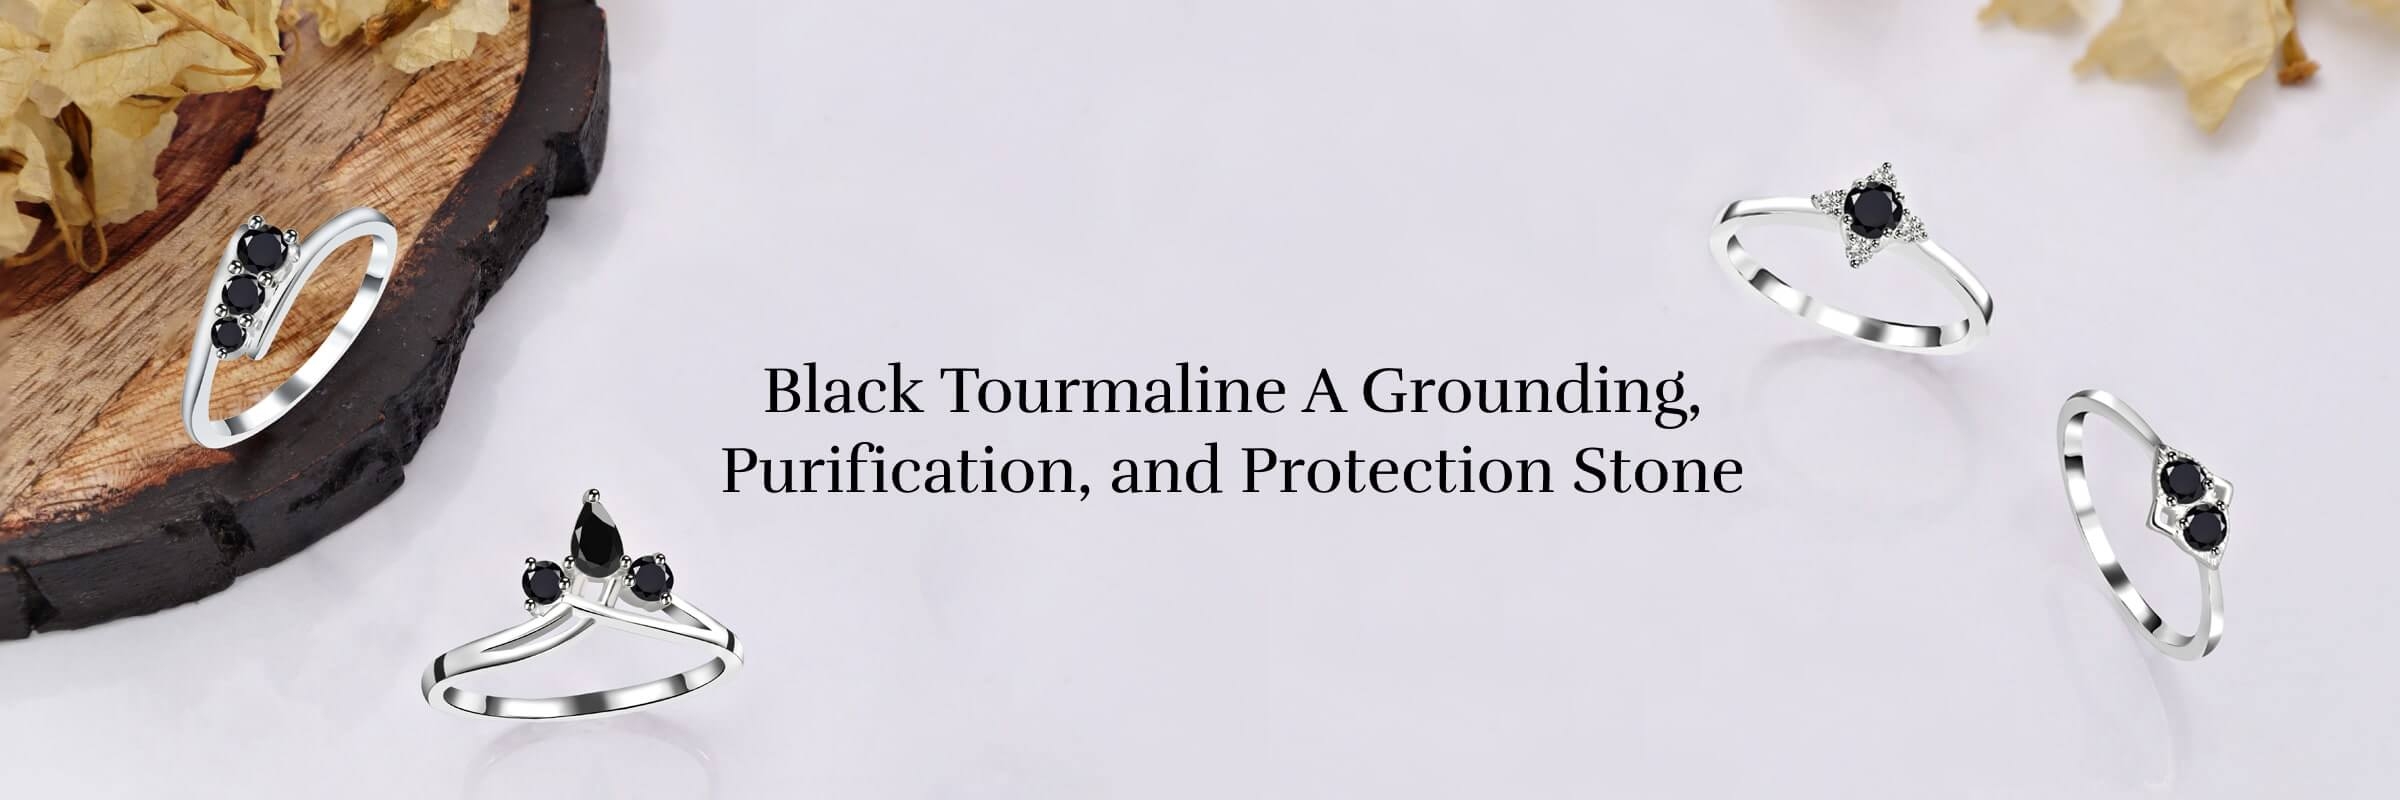 Black tourmaline